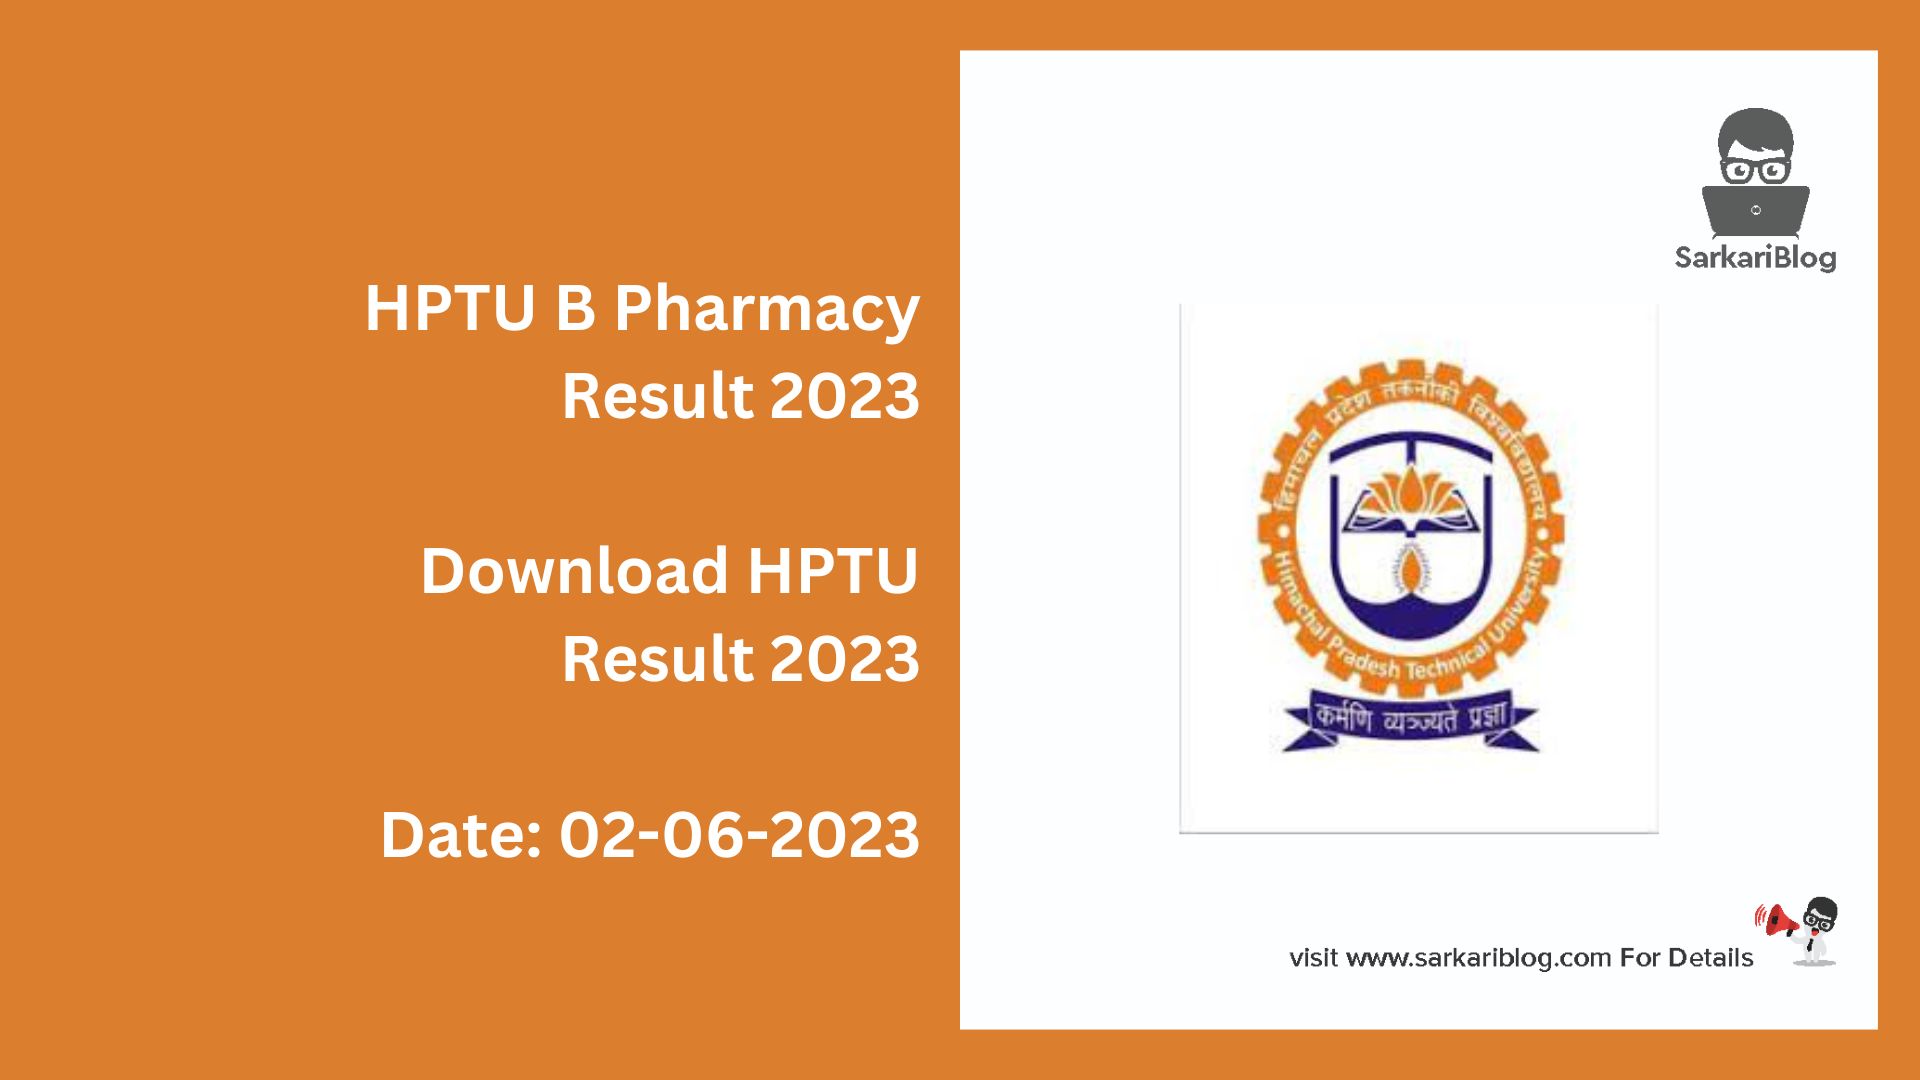 HPTU B Pharmacy Result 2023